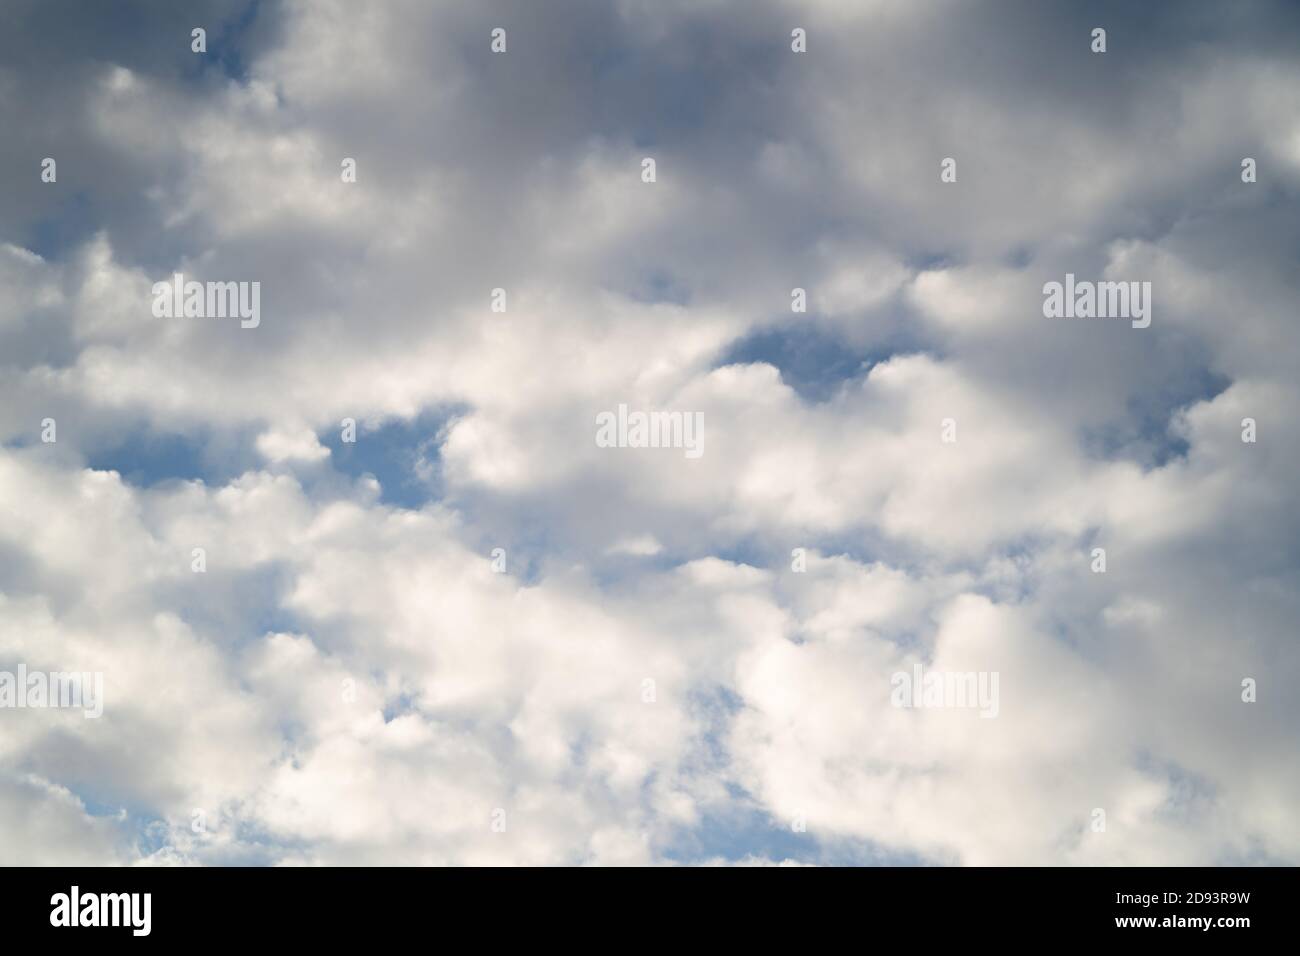 Hochauflösendes Sky-Hintergrundbild für den Einsatz als Sky Replacement. Querformat. Weiße Stratocumulus Wolken auf einem blauen Himmel Stockfoto